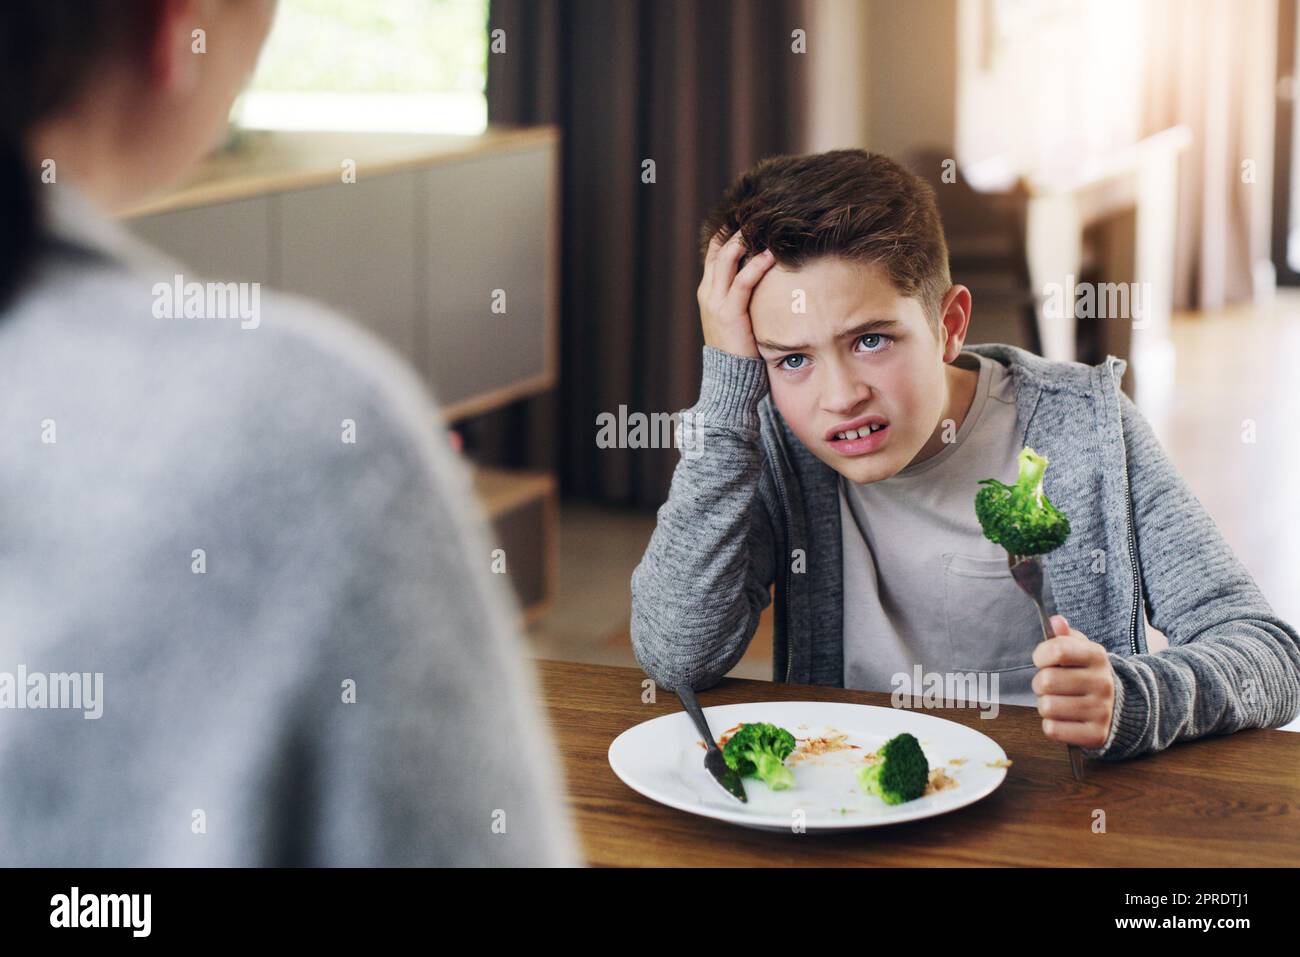 Comment tout ce qui a mauvais goût peut être bon pour vous. Une mère qui dit à son fils de manger son brocoli qu'il n'aime pas. Banque D'Images